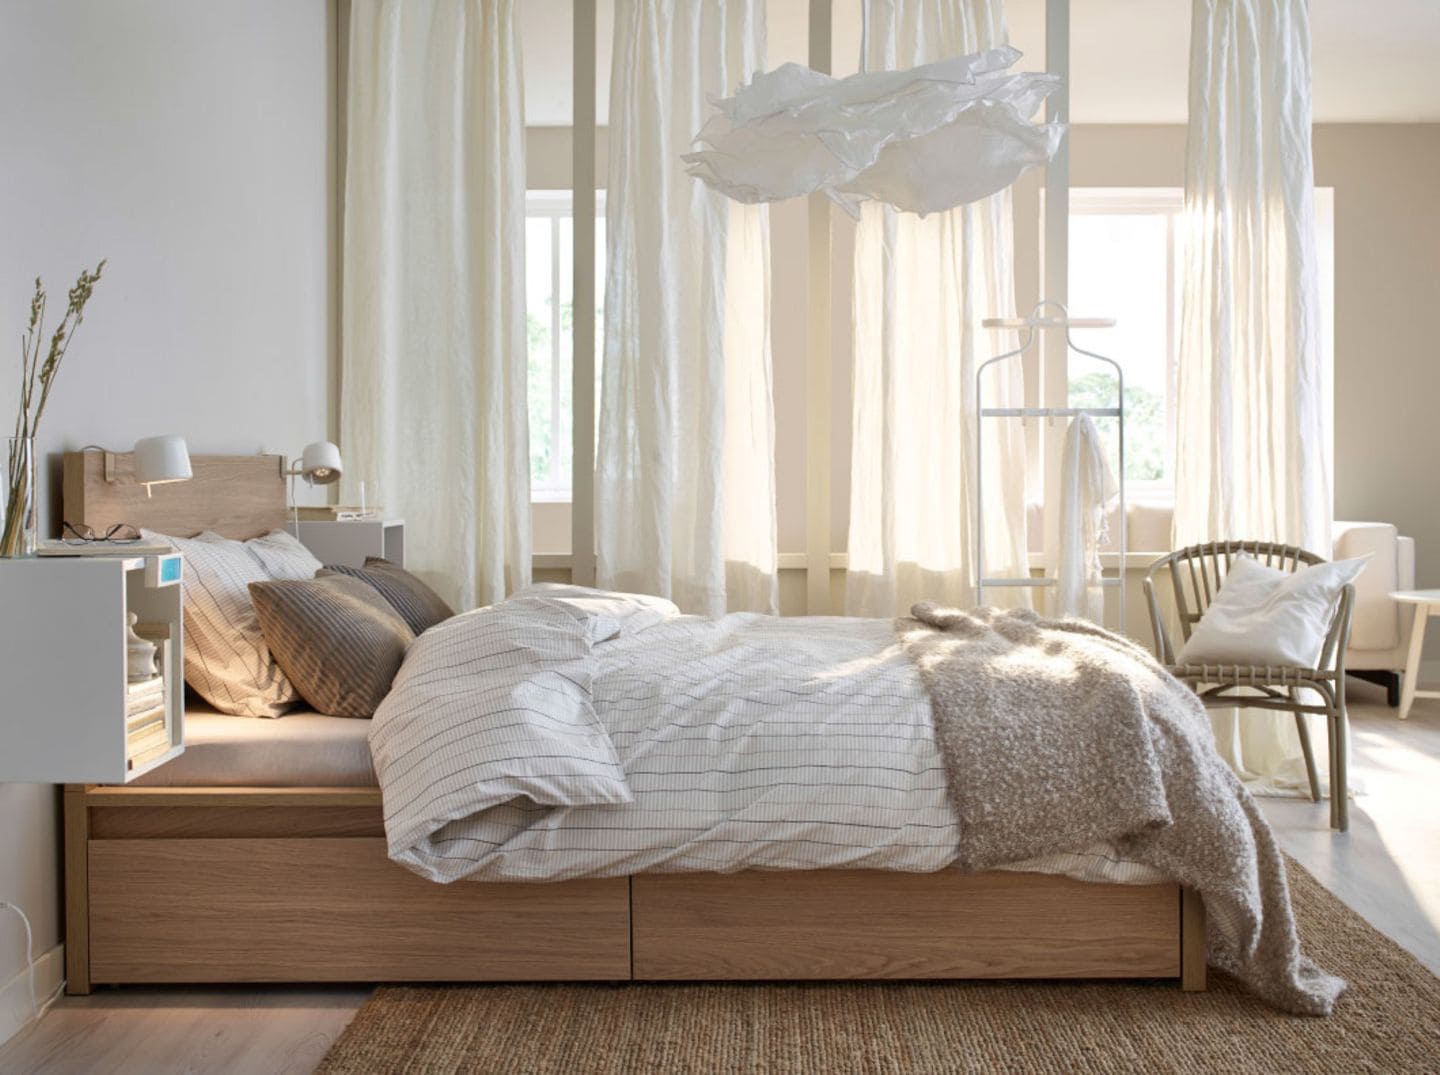 Bett "Malm" von Ikea